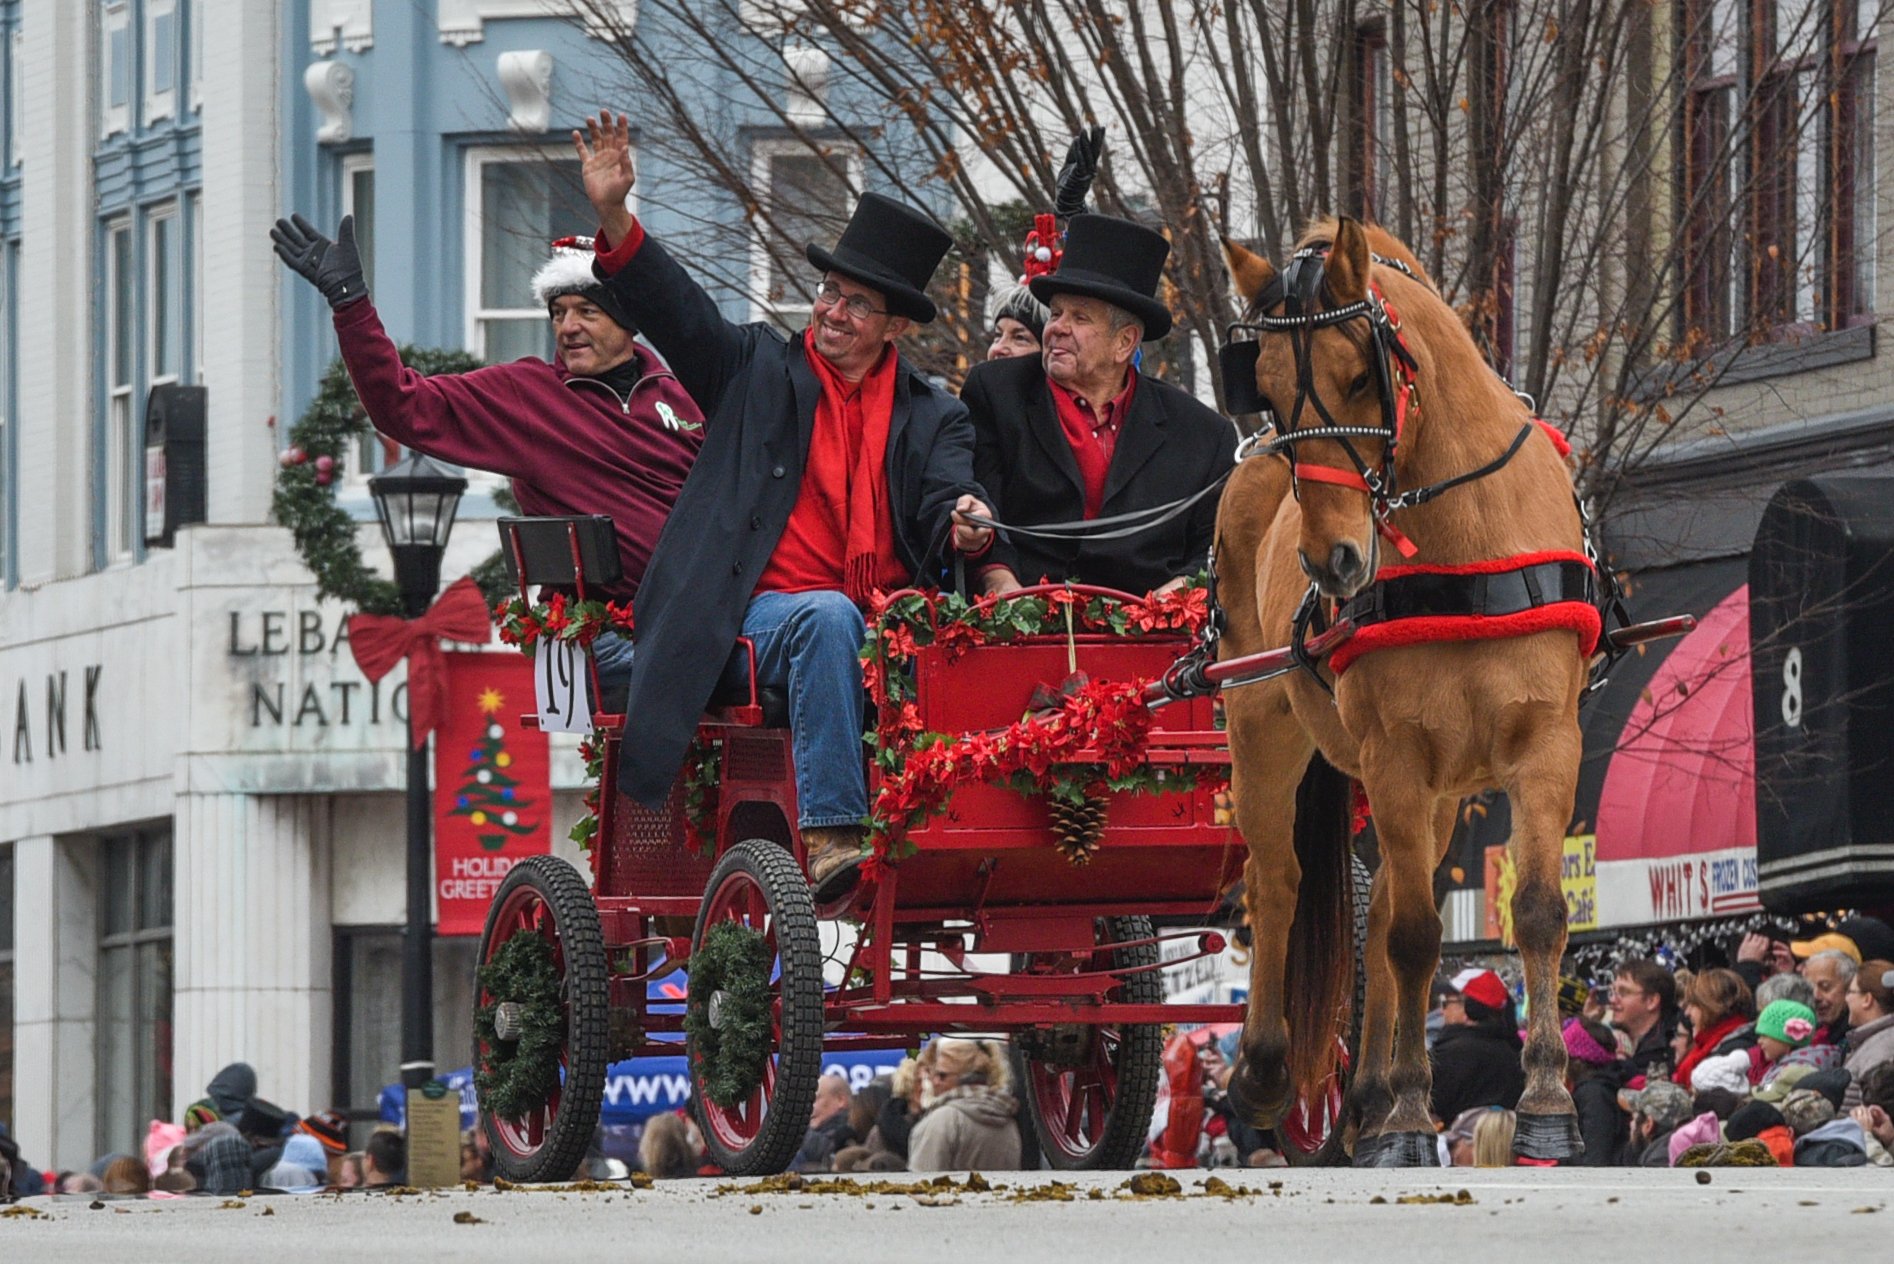 lebanon ohio holiday horse parade.jpg